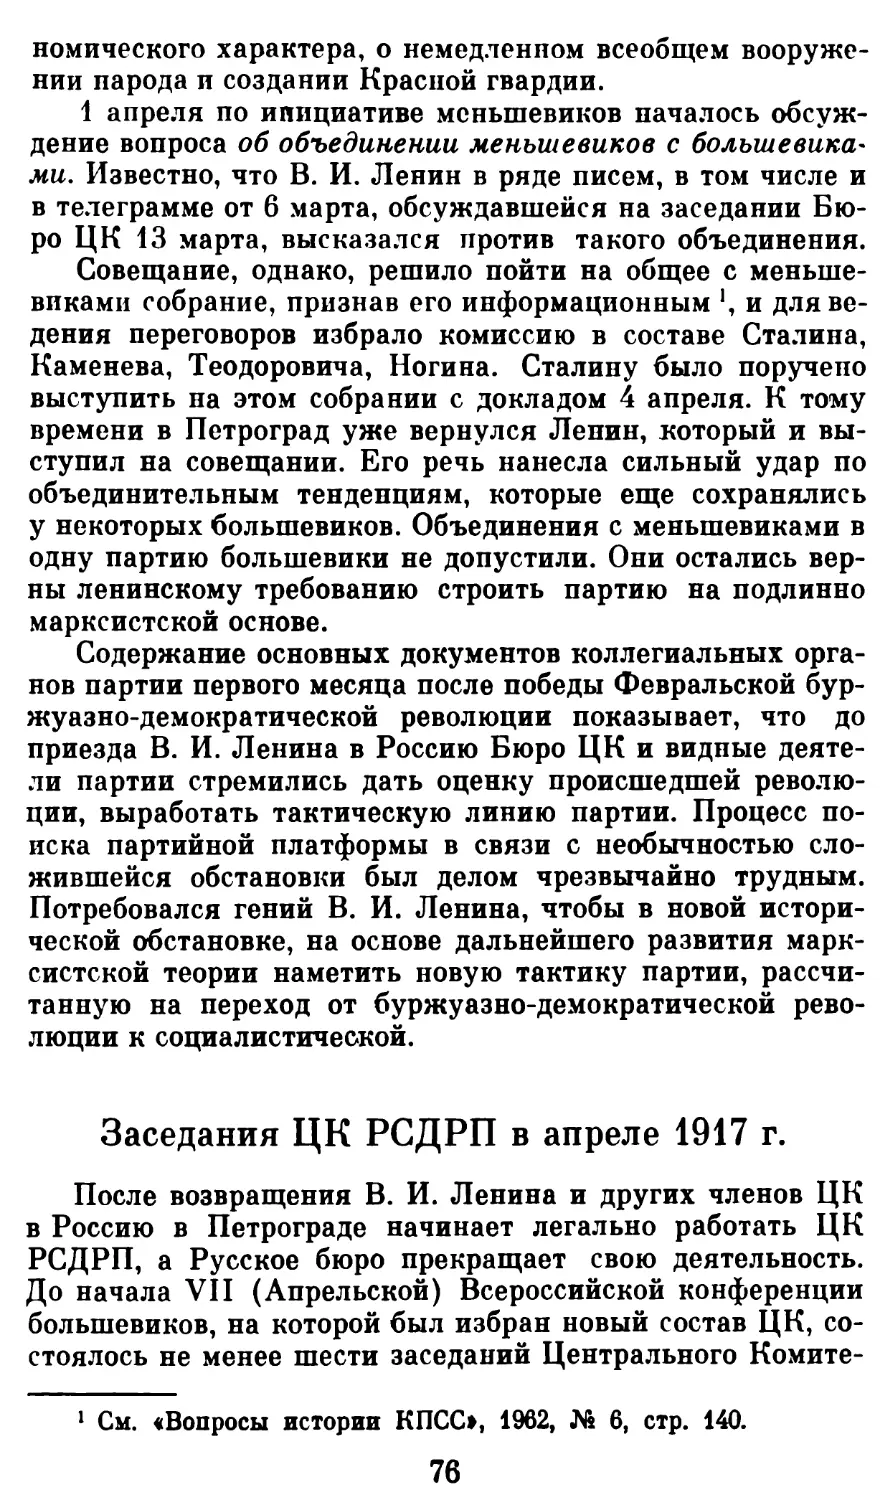 Заседания ЦК РСДРП в апрело 1917 г